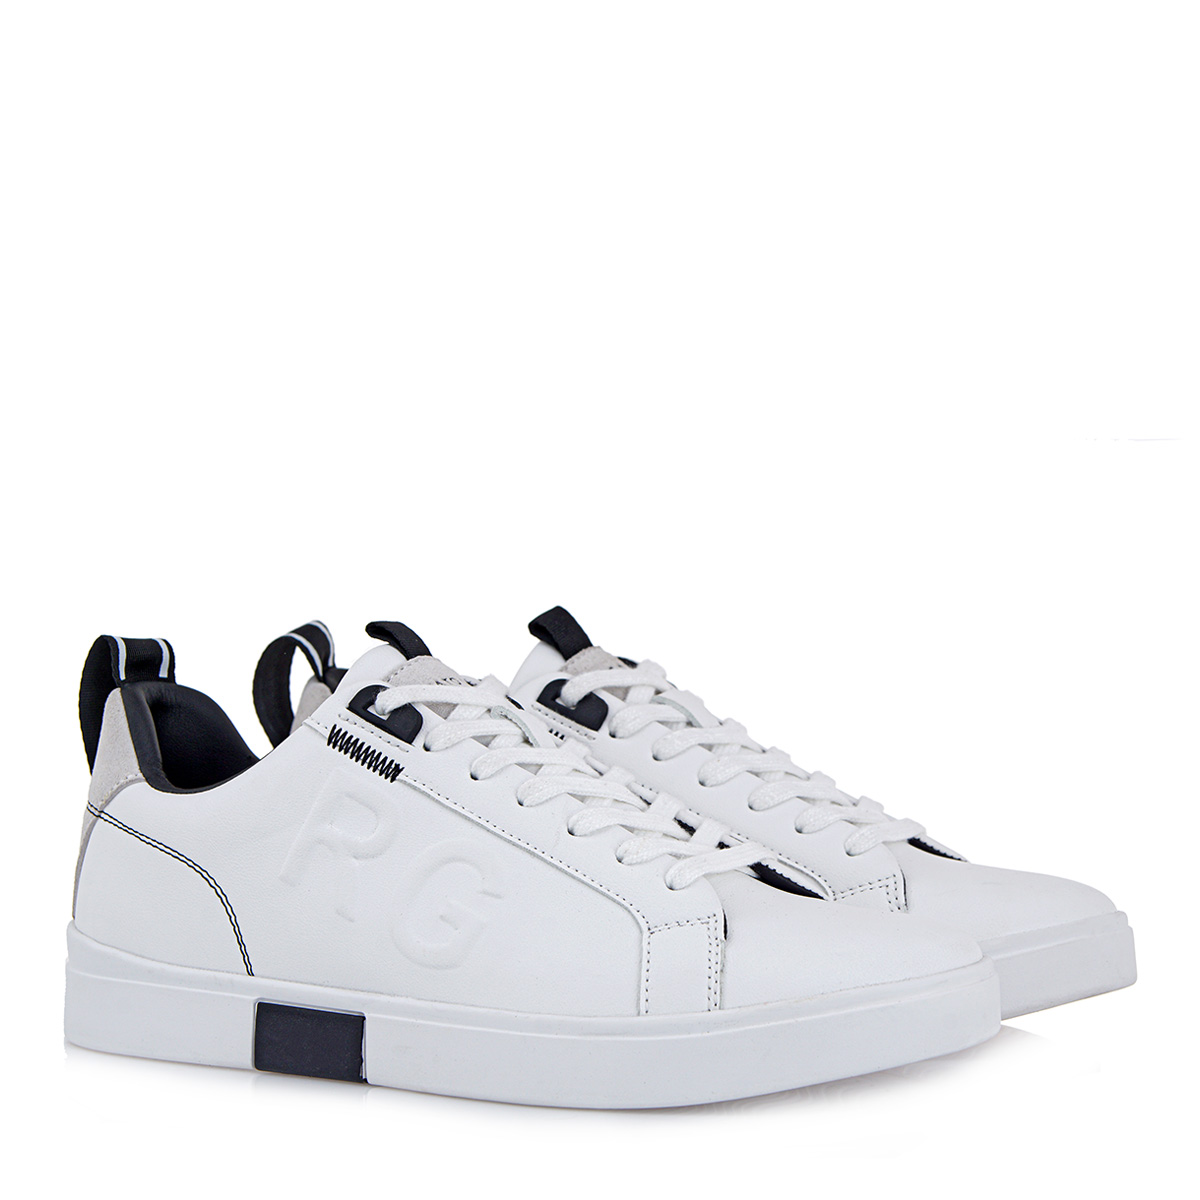 Ανδρικό Sneaker άσπρο Renato Garini R5700456189Ε